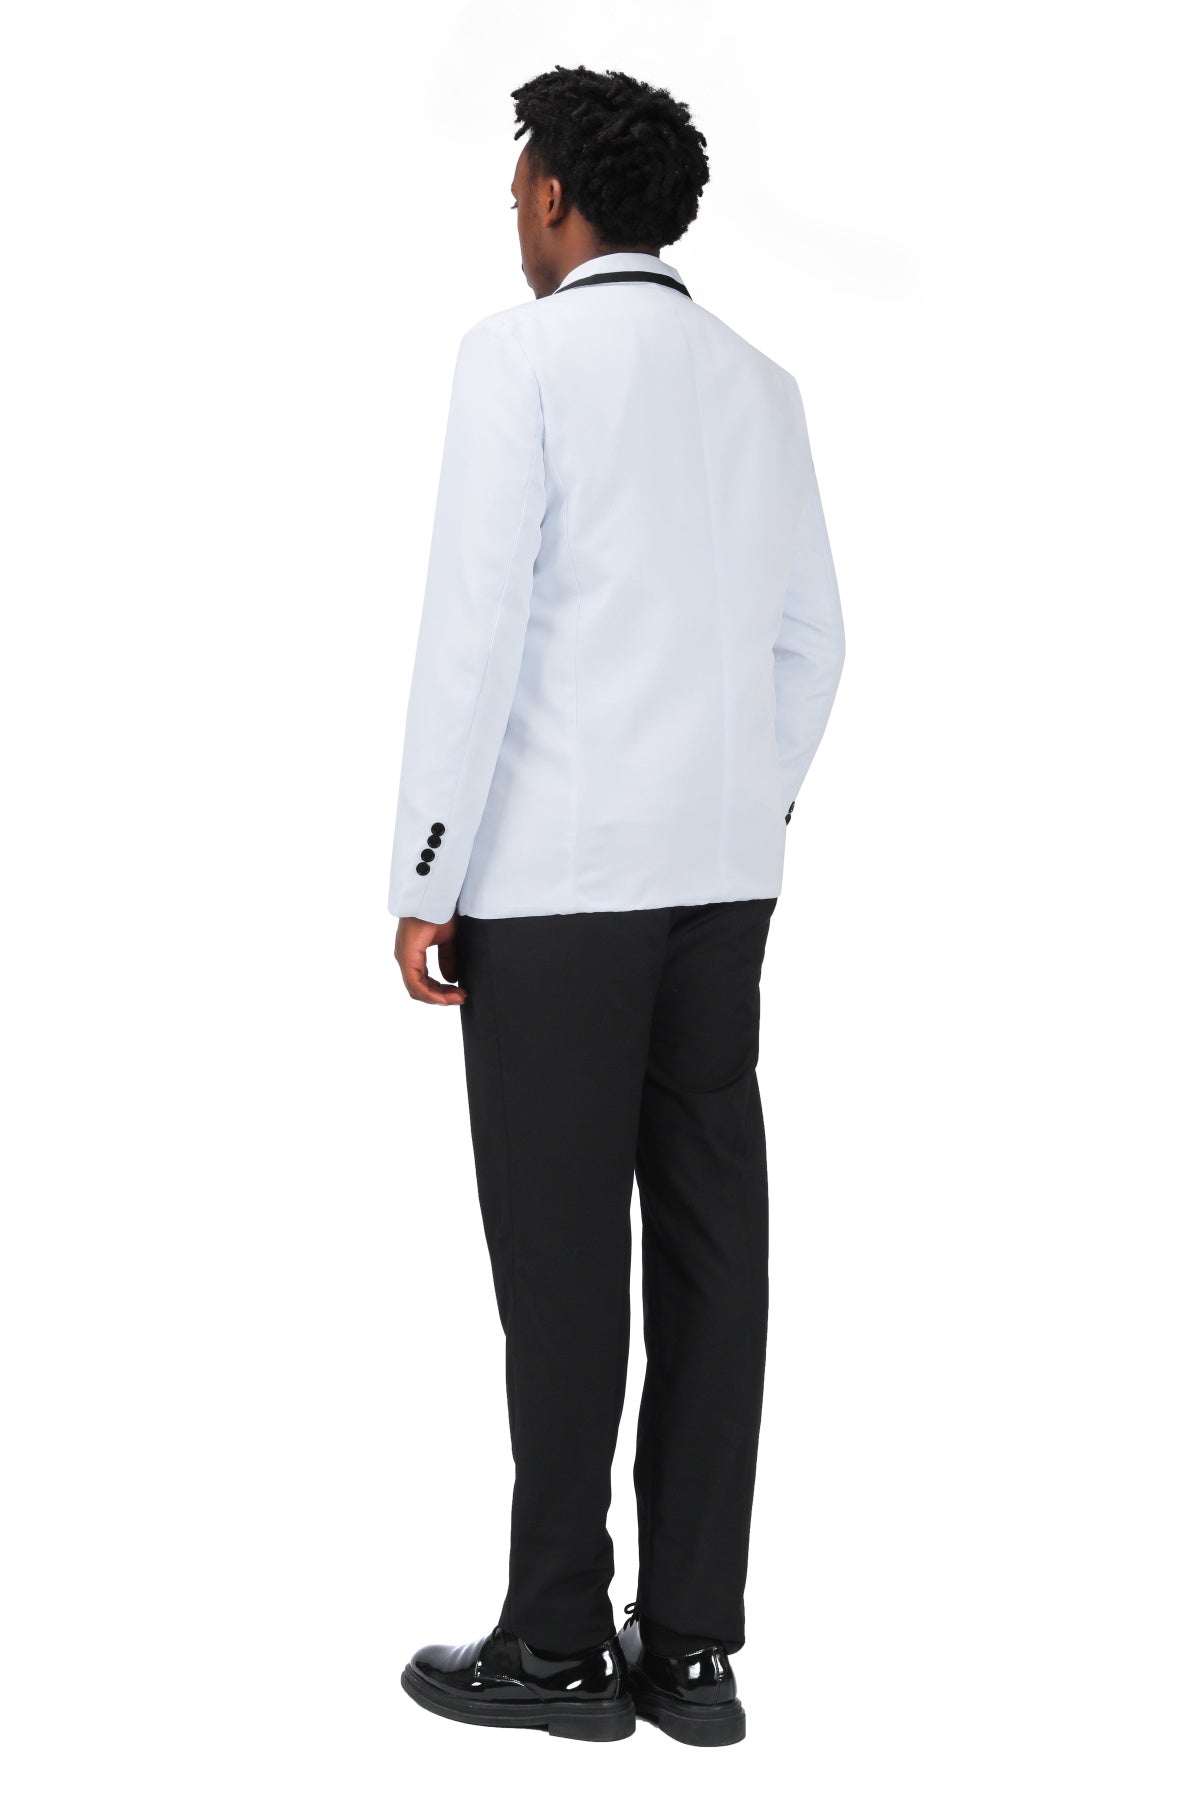 Cloudstyle Men's 2-Piece Suits Slim Fit 1 Button Dress Suit Jacket Blazer &  Pants Set, A/Griege, X-Small : : Clothing, Shoes & Accessories